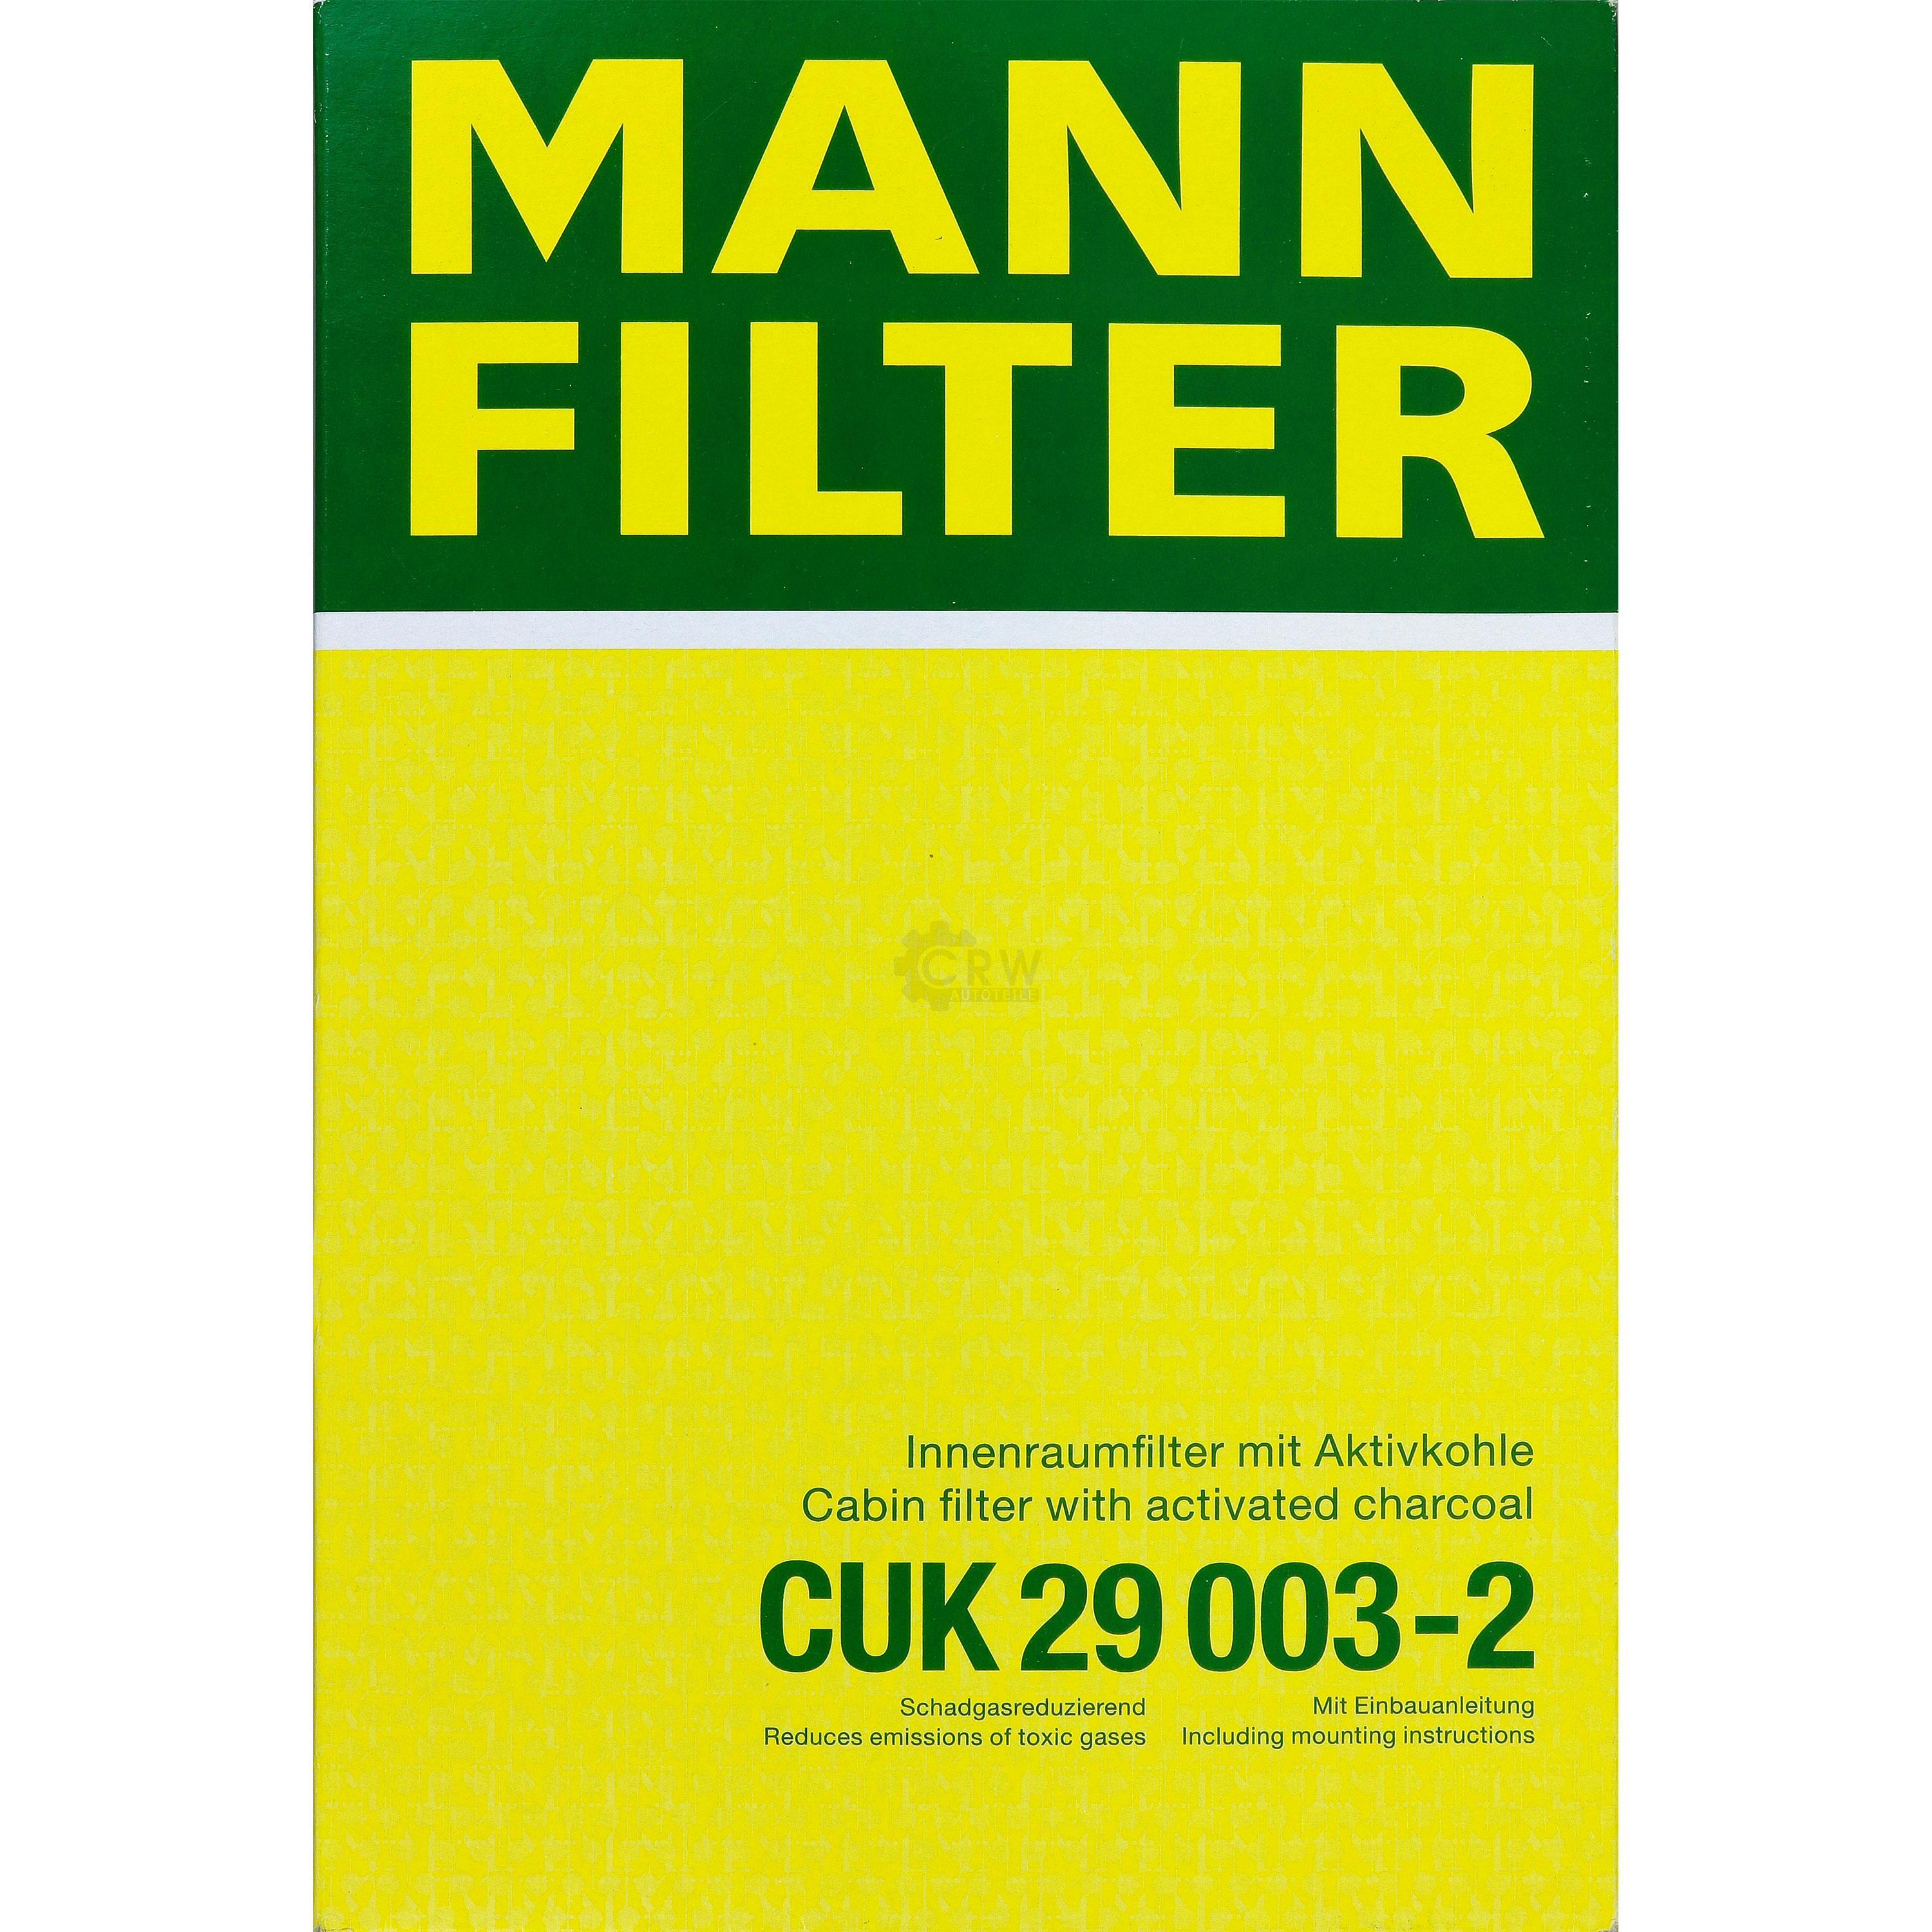 MANN-FILTER Innenraumfilter Pollenfilter Aktivkohle CUK 29 003-2